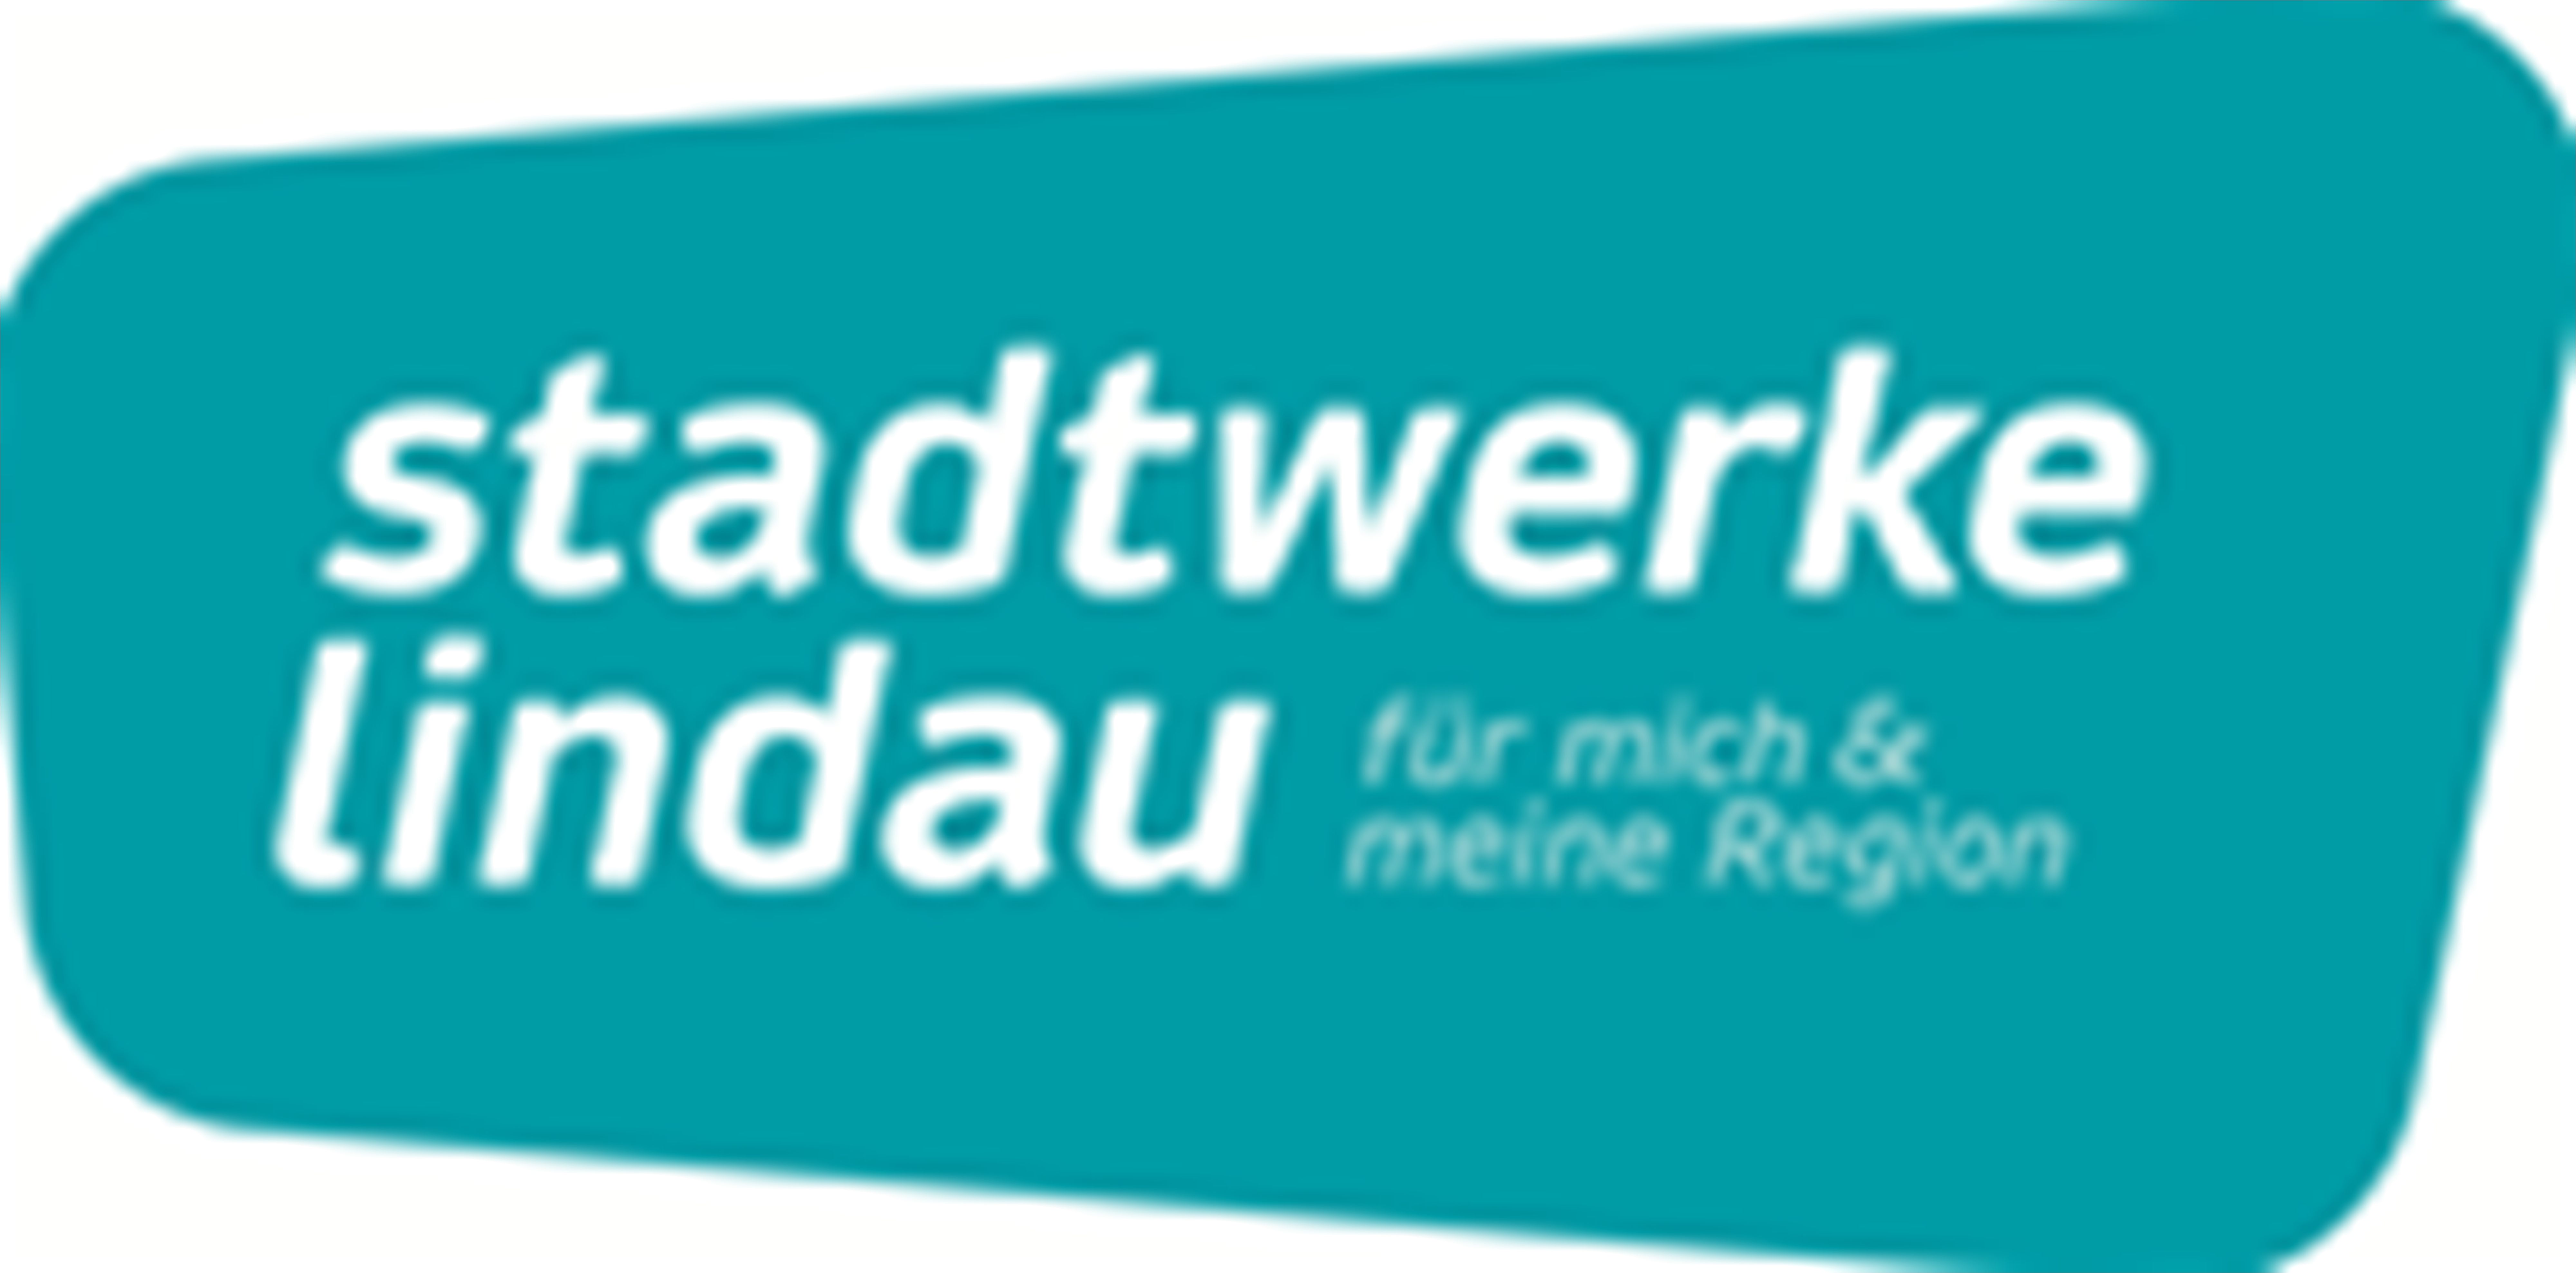 Stadtwerke Lindau GmbH und Co. KG